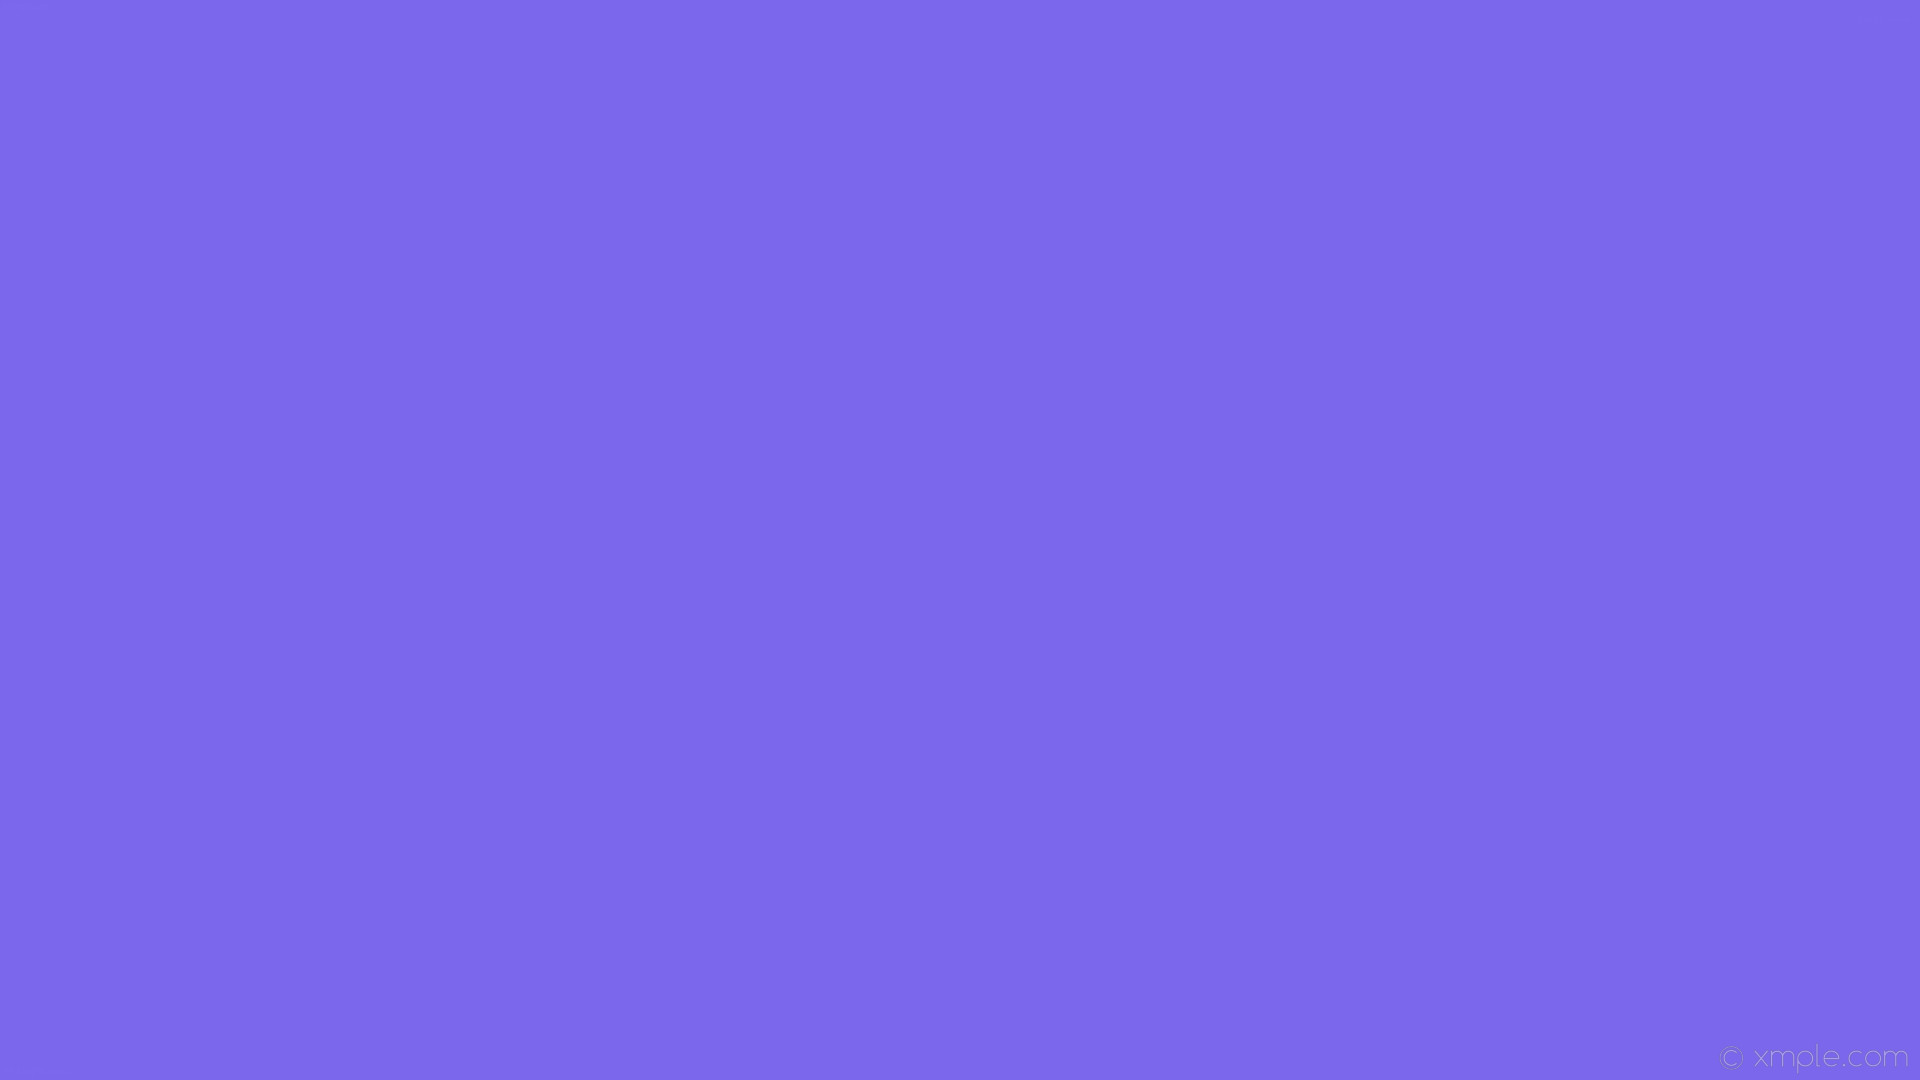 1920x1080  wallpaper one colour blue single plain solid color #7b67eb